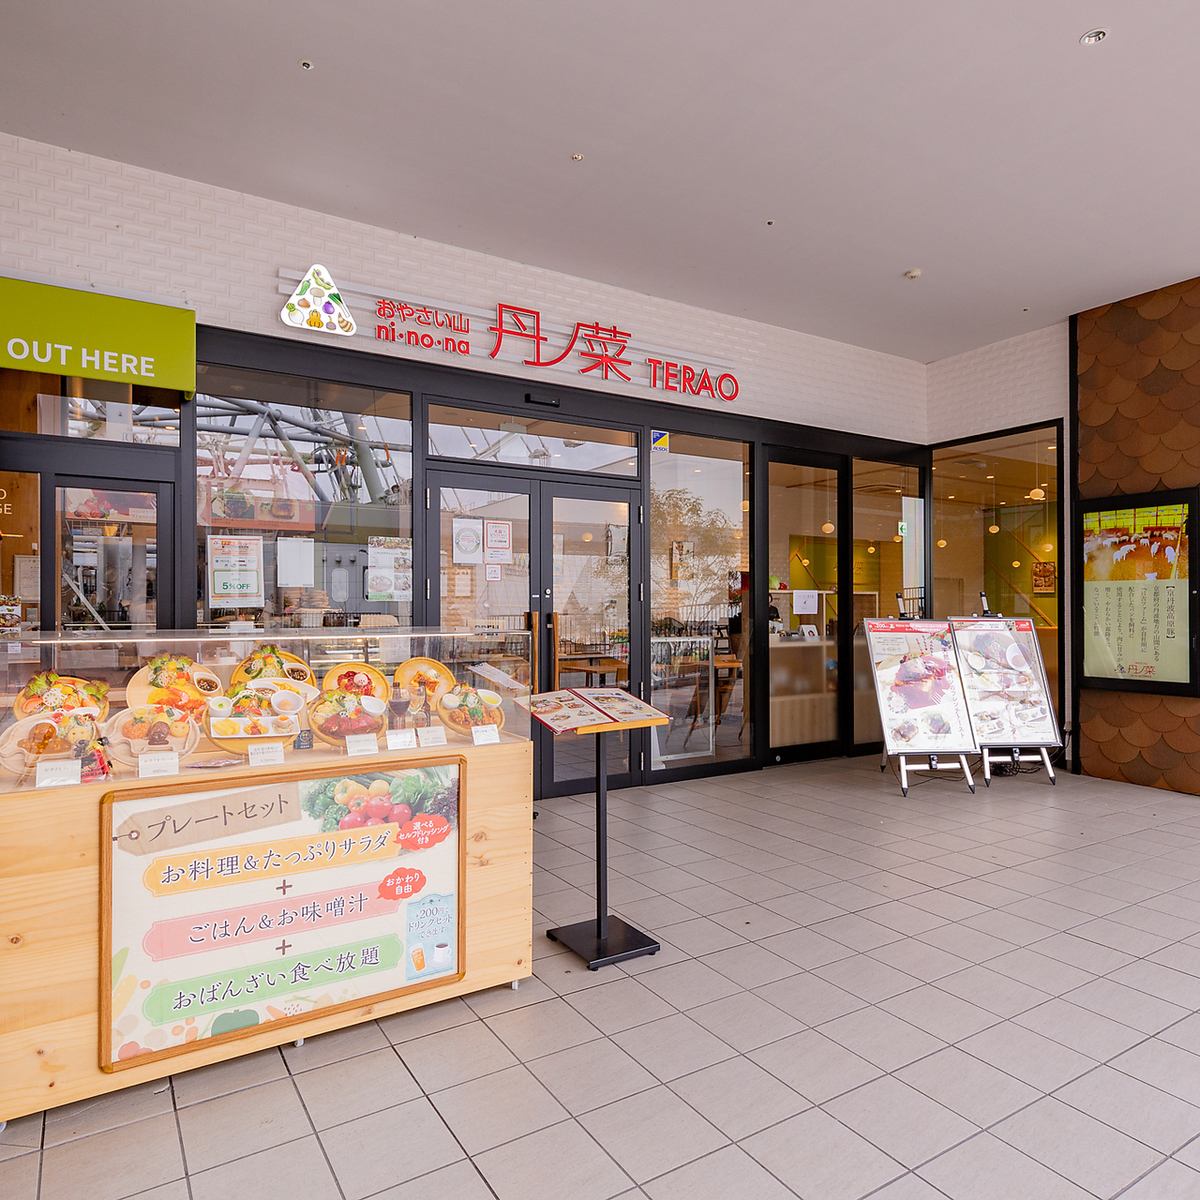 使用大量京丹波產豐富、美味、色彩繽紛的食材的“Oyasai Kitchen”